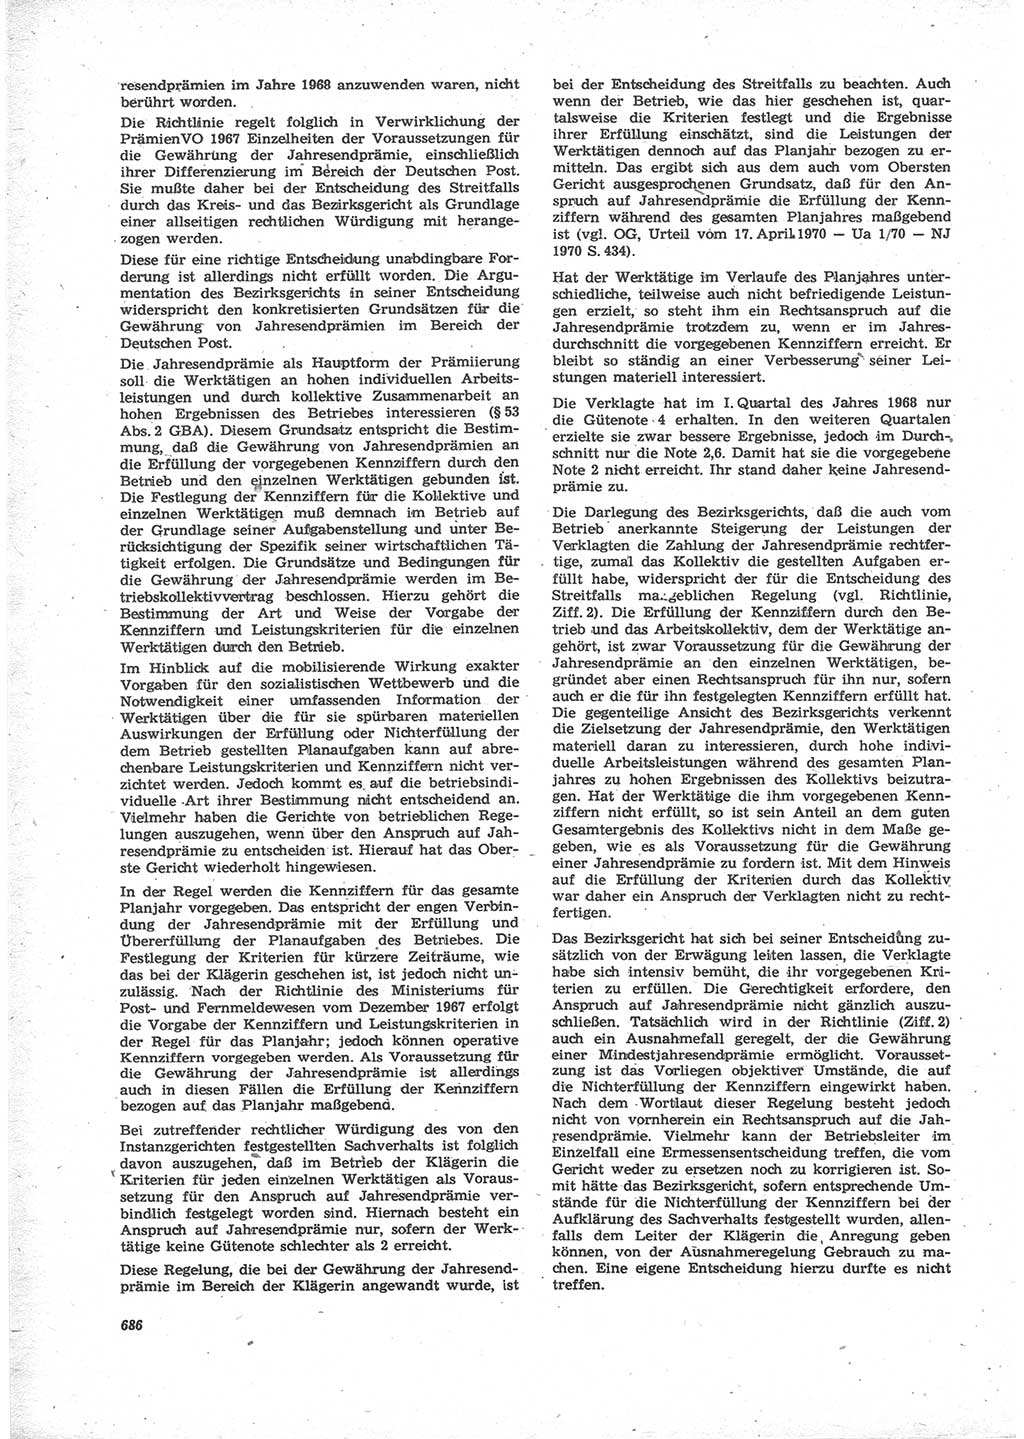 Neue Justiz (NJ), Zeitschrift für Recht und Rechtswissenschaft [Deutsche Demokratische Republik (DDR)], 24. Jahrgang 1970, Seite 686 (NJ DDR 1970, S. 686)